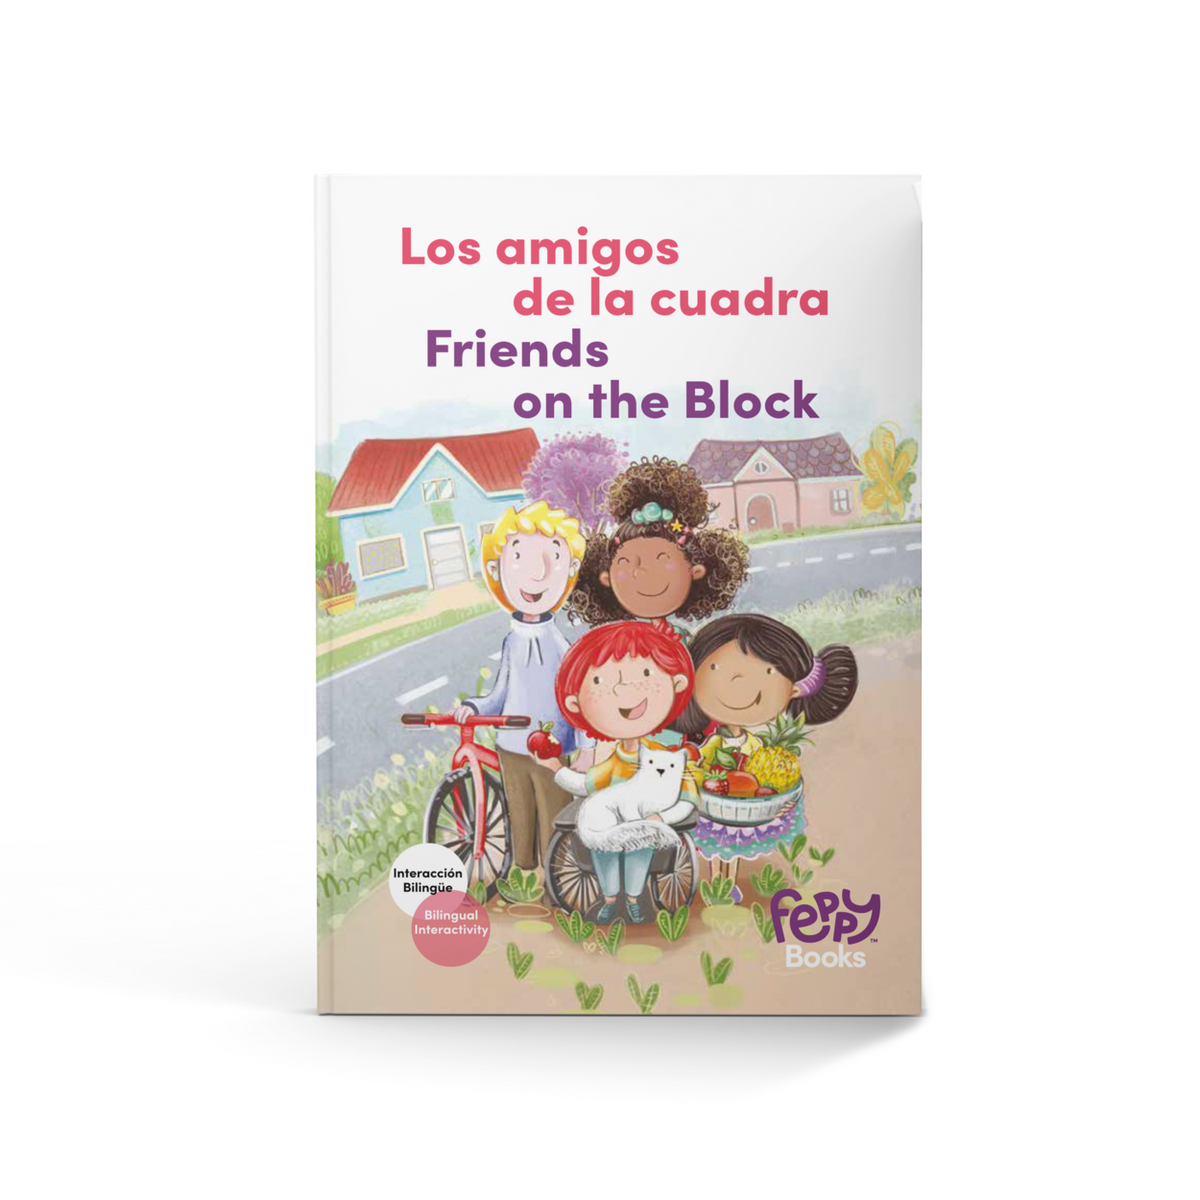 Colección de Libros Amistad - 3 Libros Bilingües en Español/Inglés para  niños